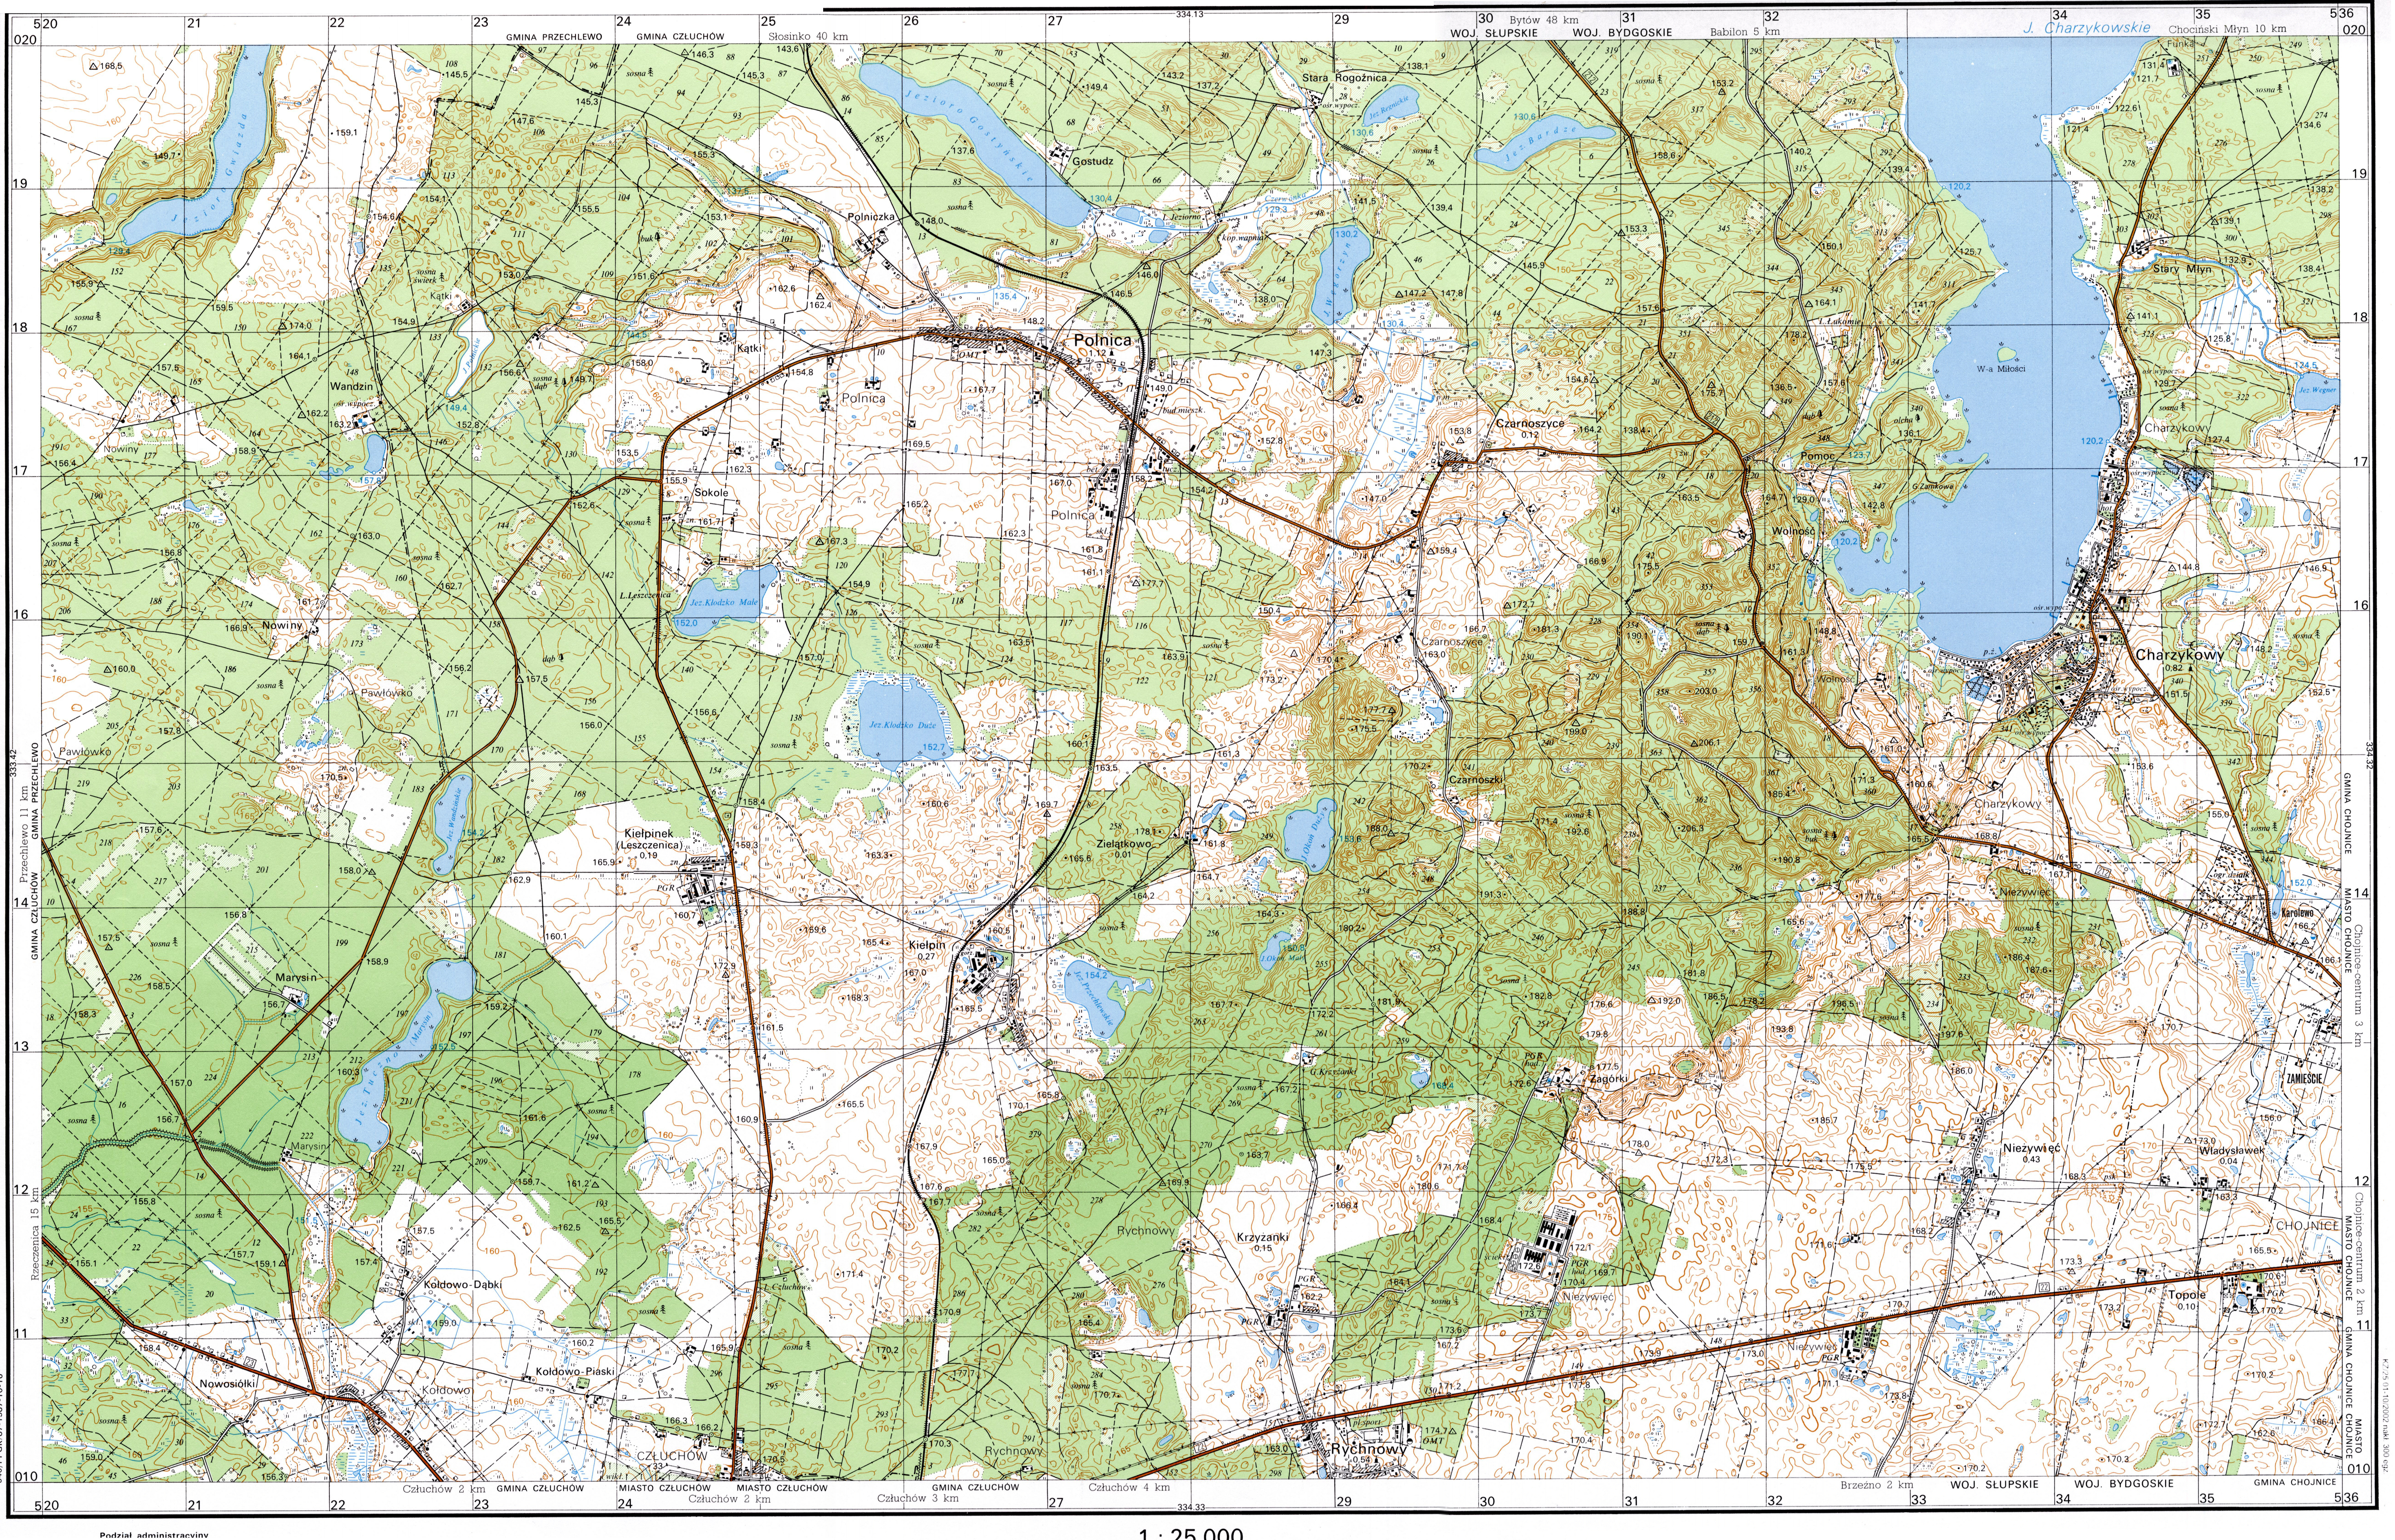 Mapy topo 25k - 334_31_Charzykowy.jpg